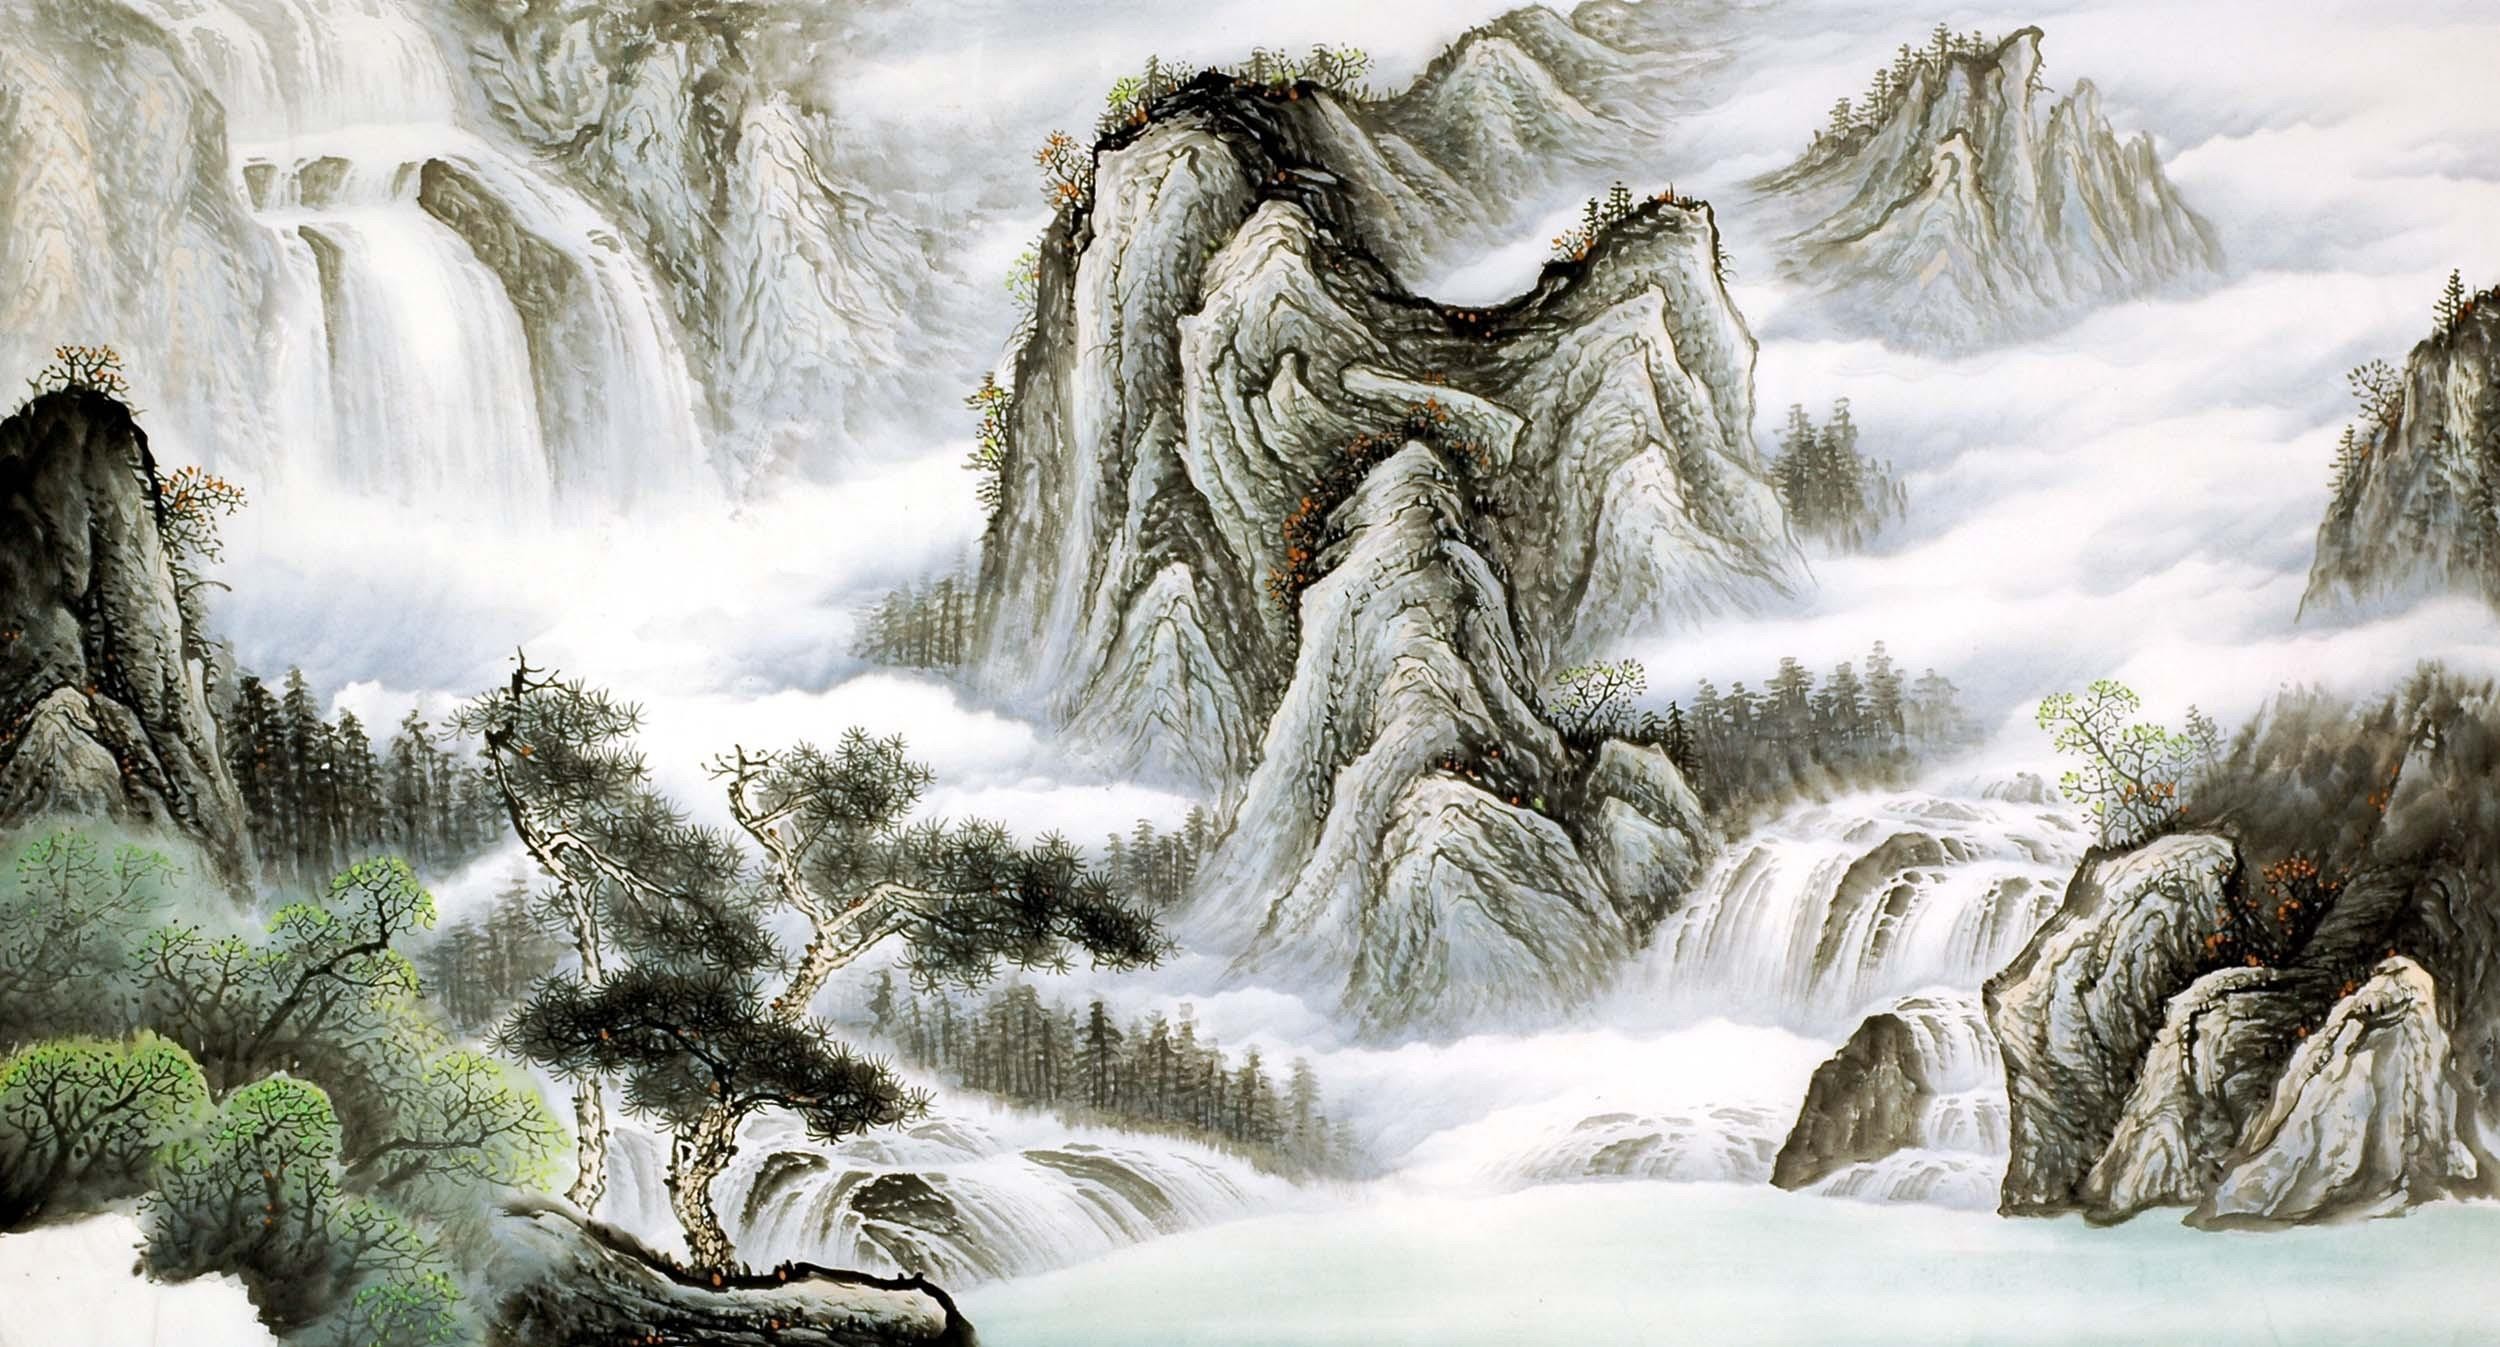 Chinese Landscape Painting - CNAG009457